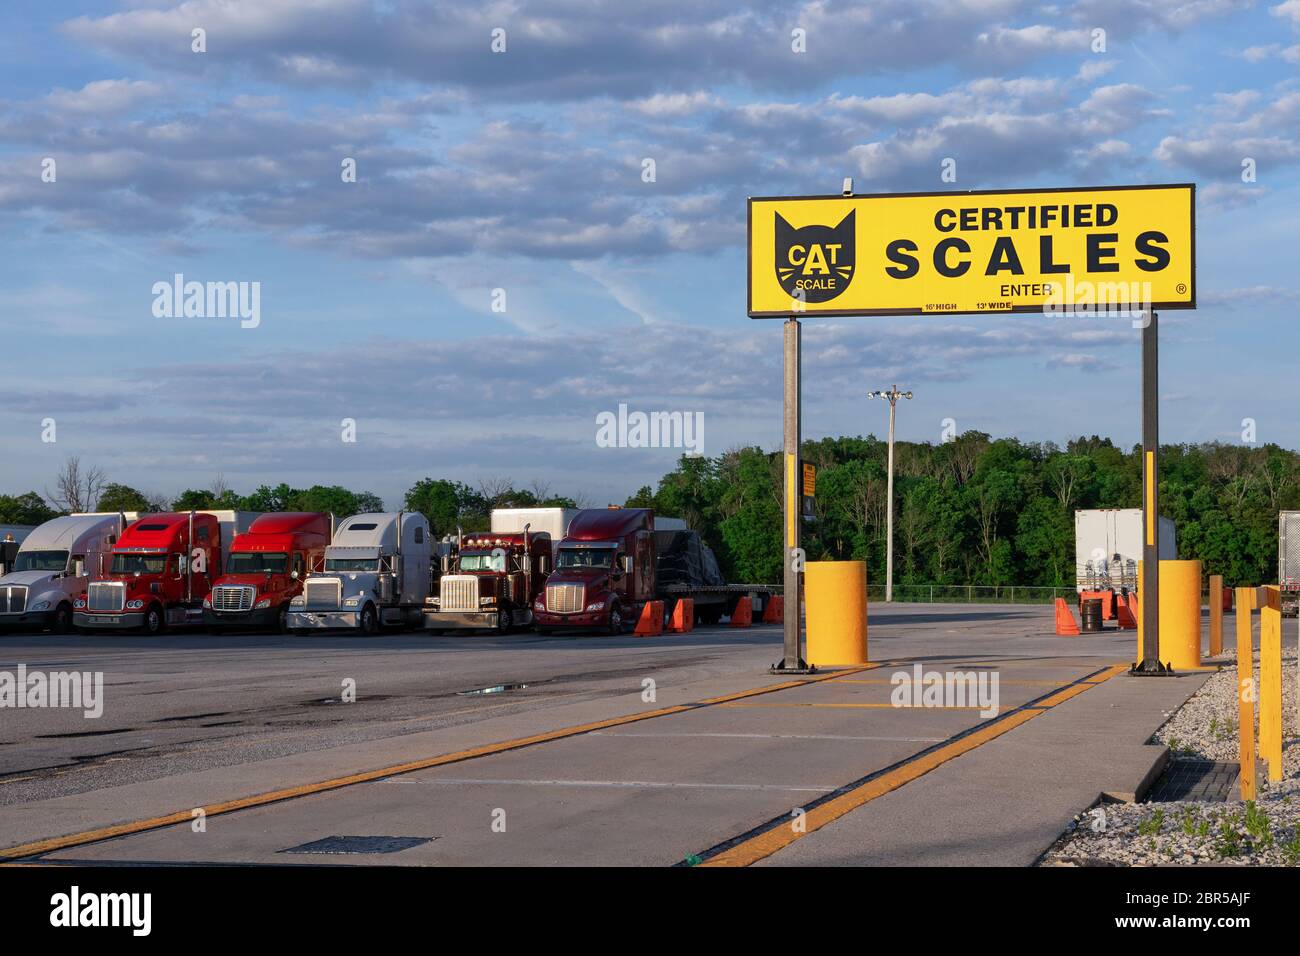 Mt. Vernon, Missouri - Juni 12 2019 - CAT-Skala. Sertified LKW und Anhänger Maßstab. Moderne LKW verschiedener Modelle Transport verschiedener Art Stockfoto